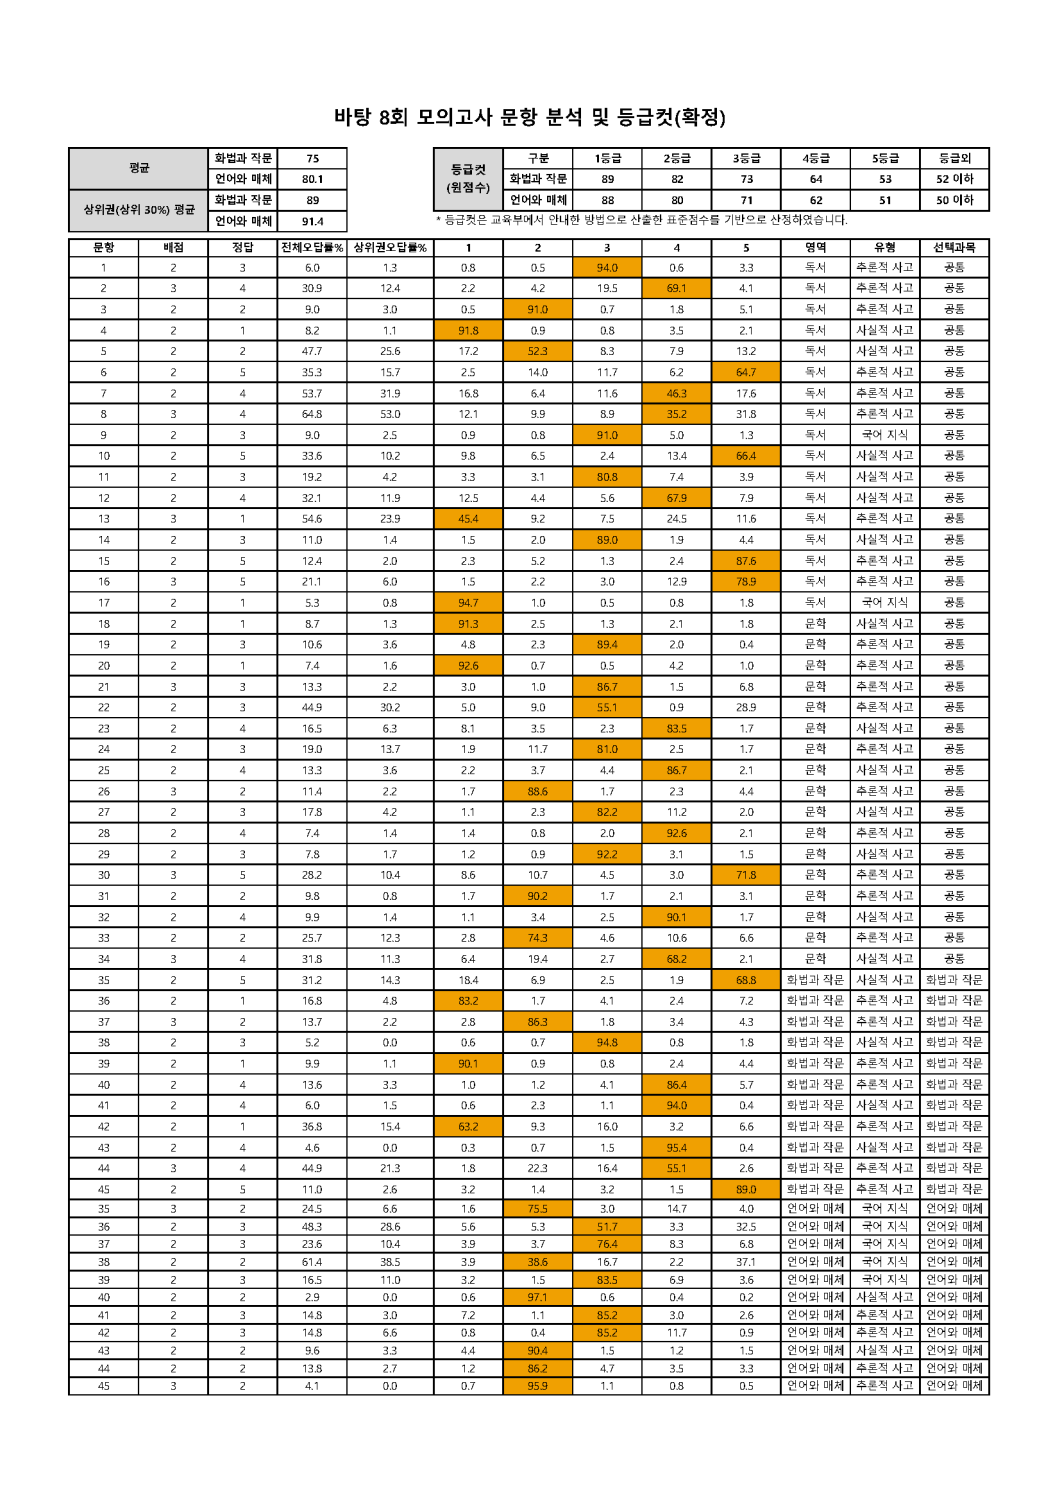 2022학년도 바탕 문항분석표 및 등급컷(1회~10회)_페이지_08.png